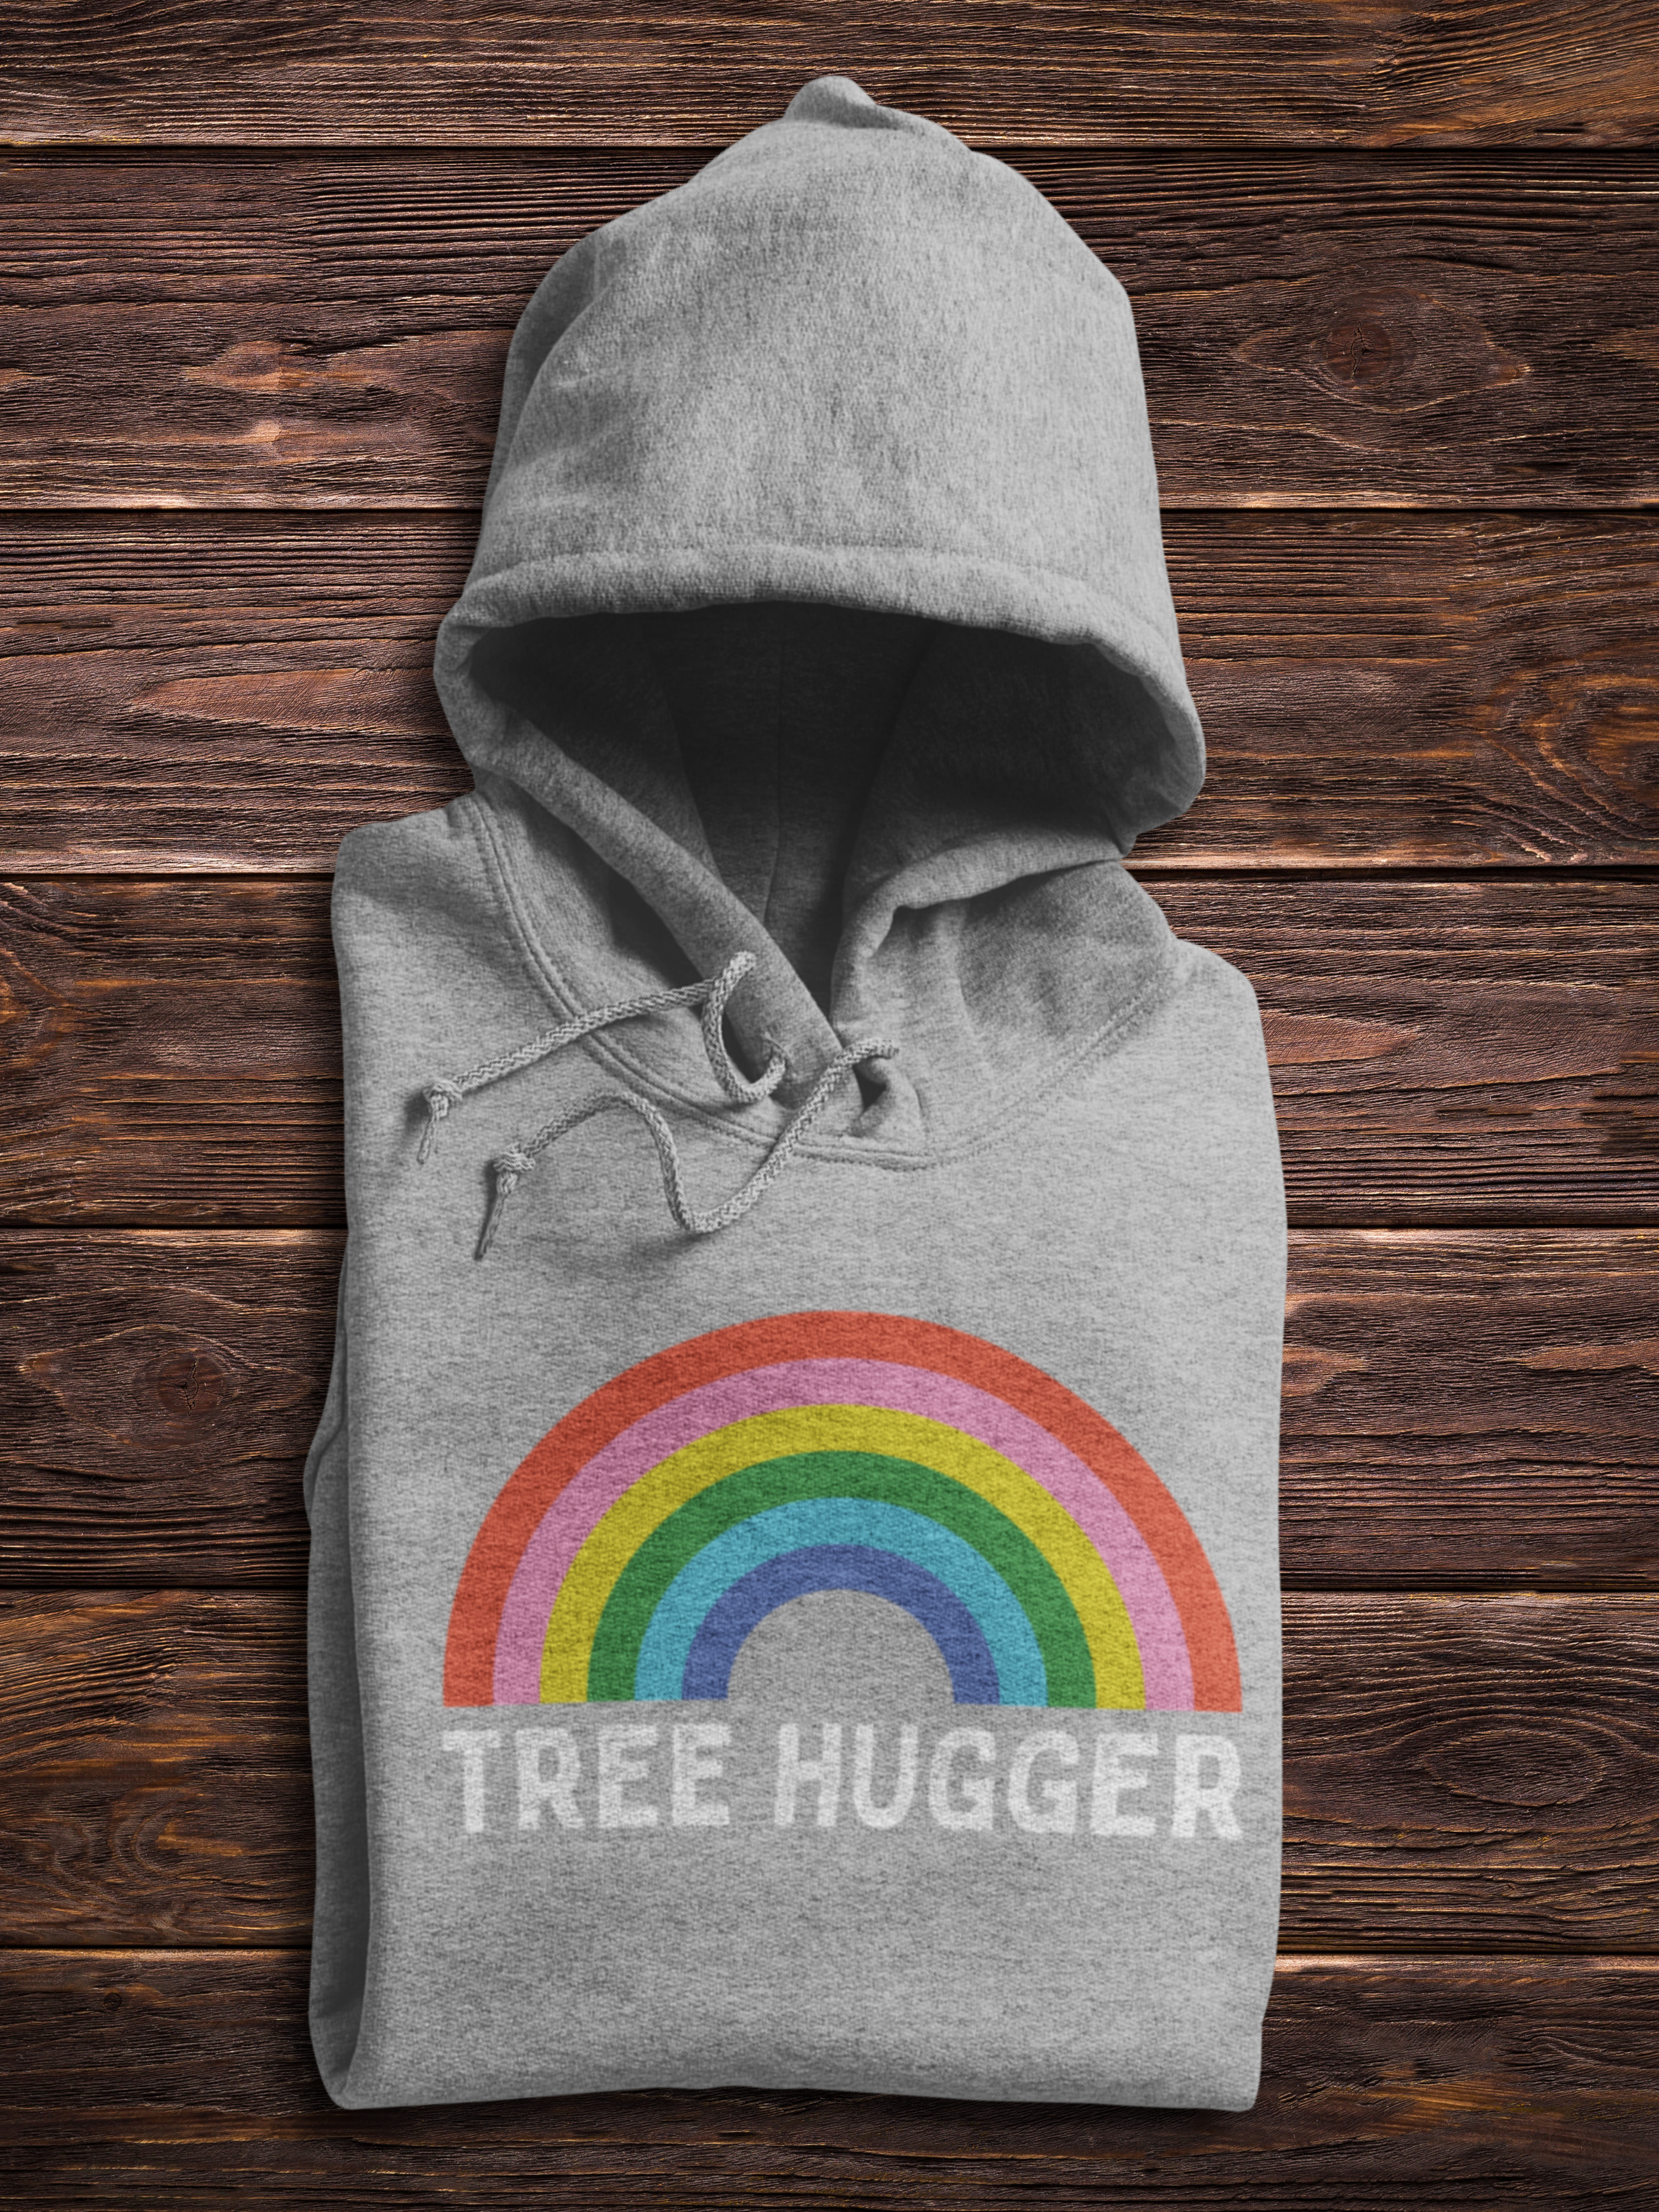 Tree Hugger Hoodie